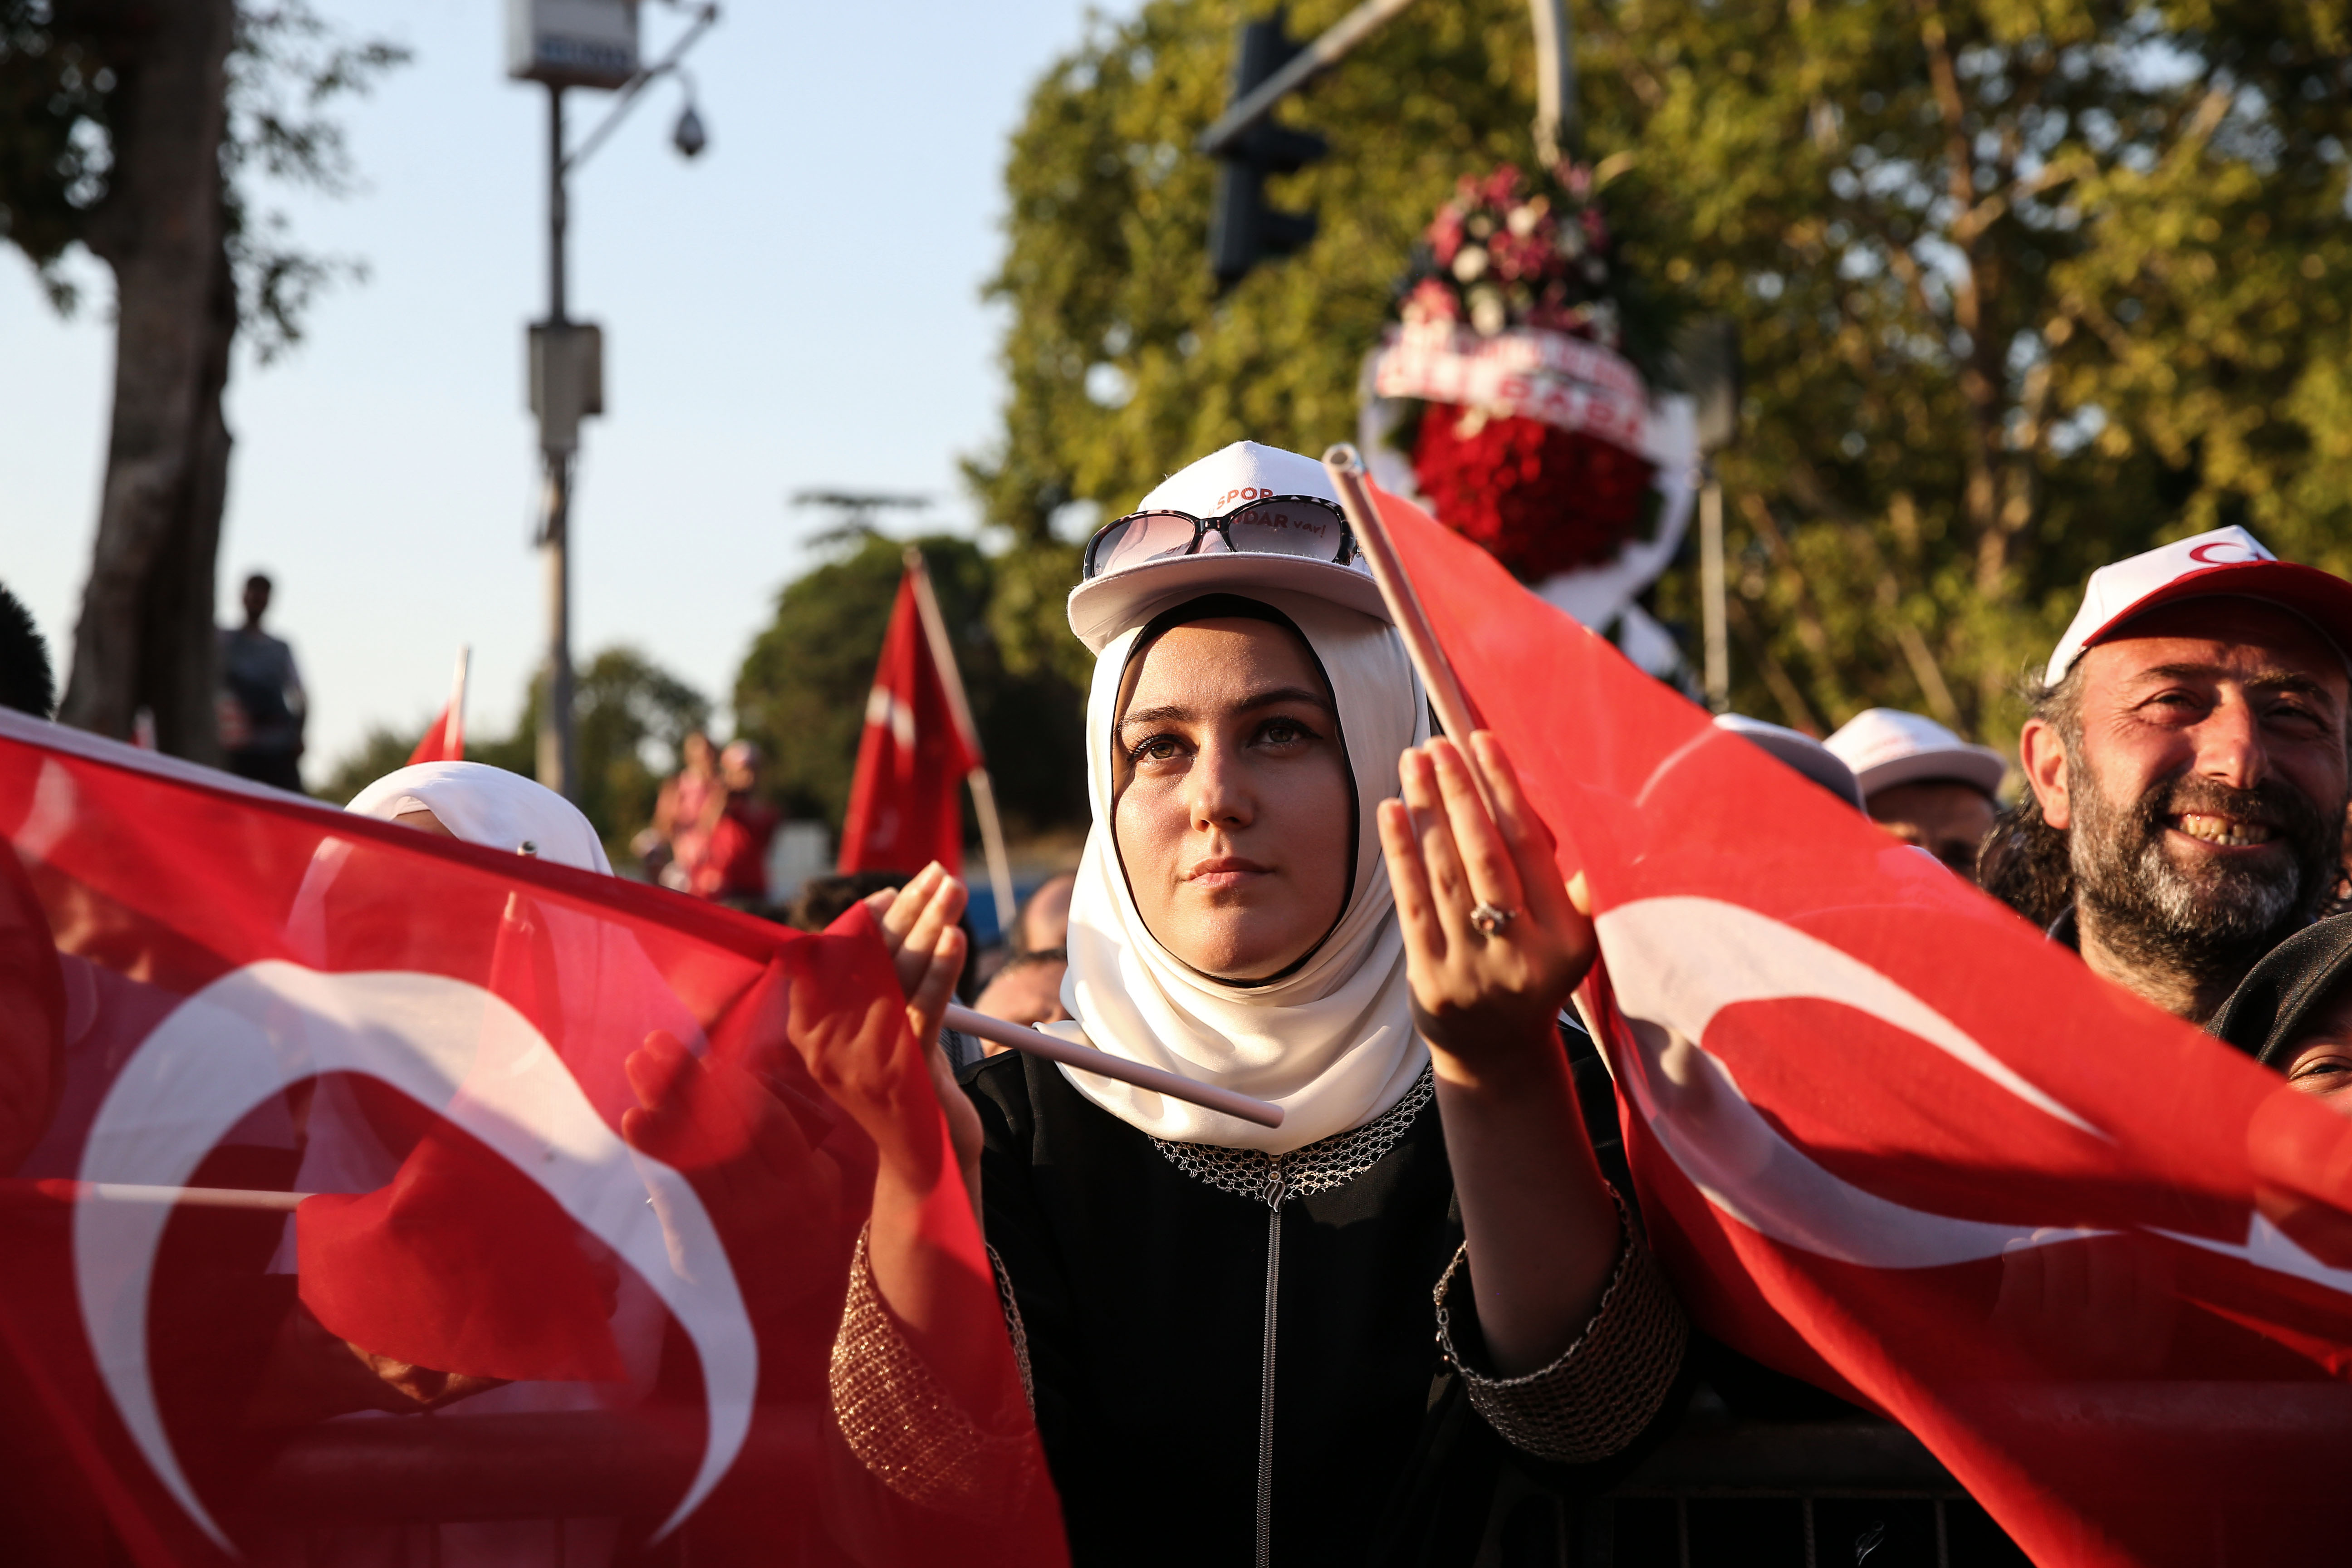 المواطنون الذين يقومون بالدعاء والأعلام التركية بأيديهم.